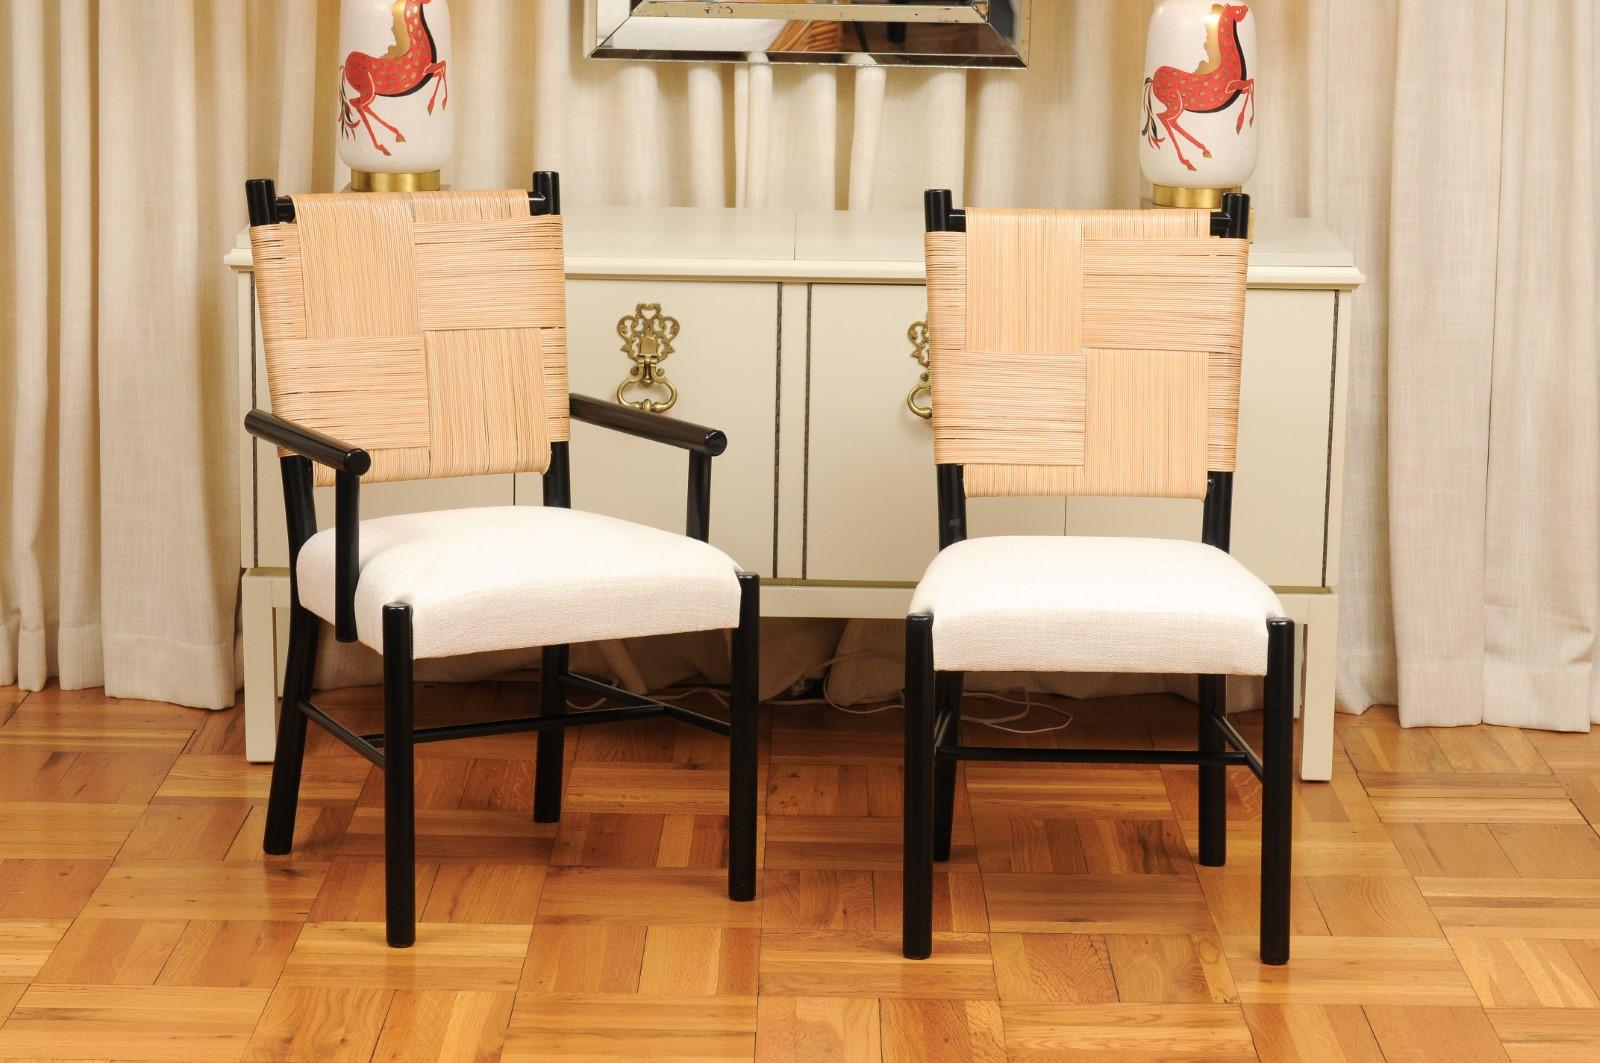 Ce magnifique ensemble de chaises de salle à manger est unique sur le marché mondial. L'ensemble est expédié tel qu'il a été photographié et décrit par les professionnels dans le texte de l'annonce : Méticuleusement restauré par des professionnels,